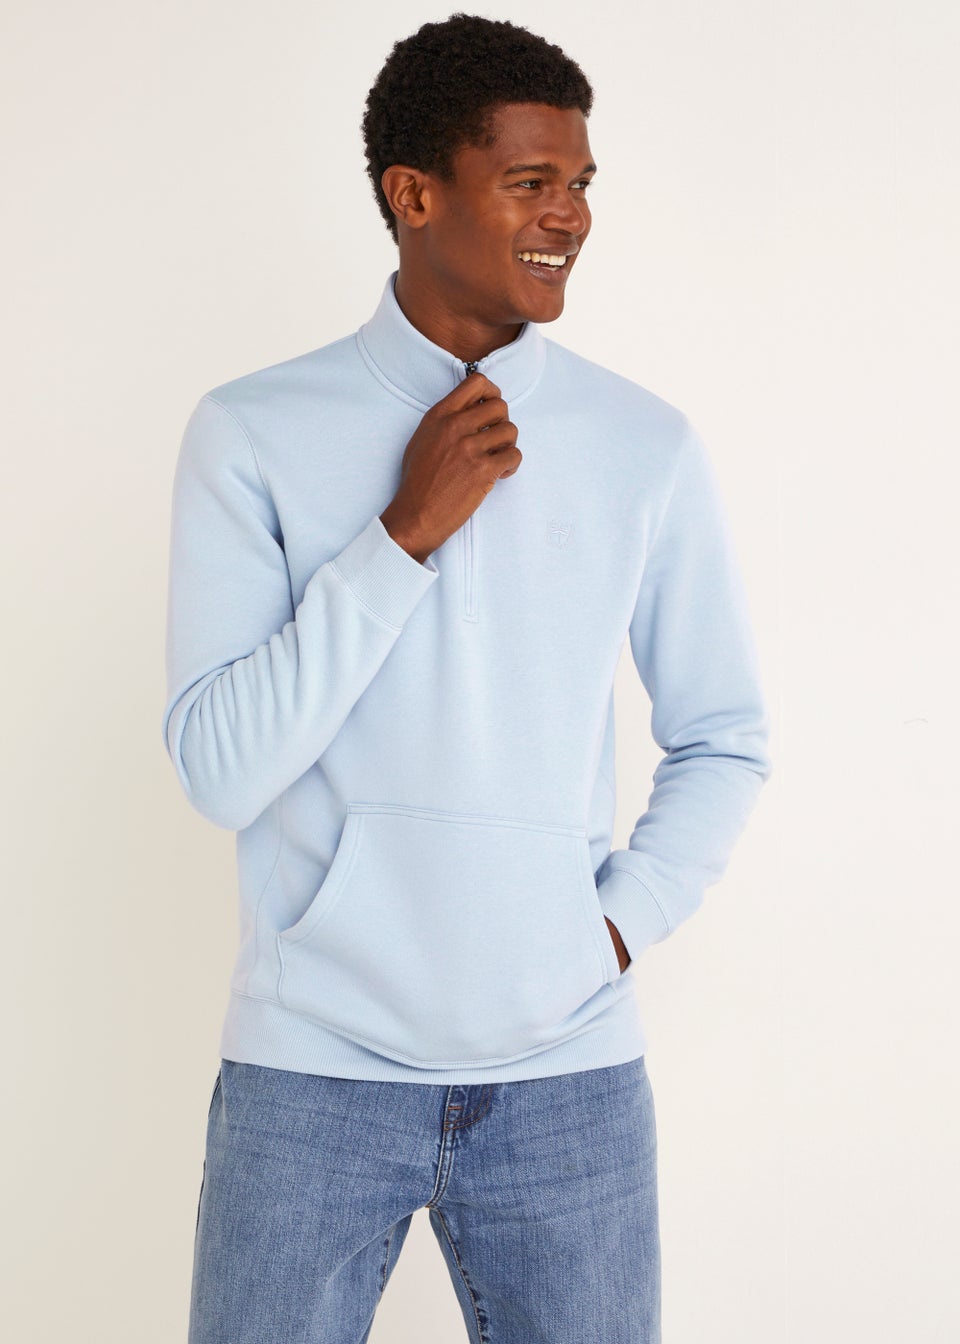 Soft Jersey Half Zip, Men's Long Sleeve Shirts